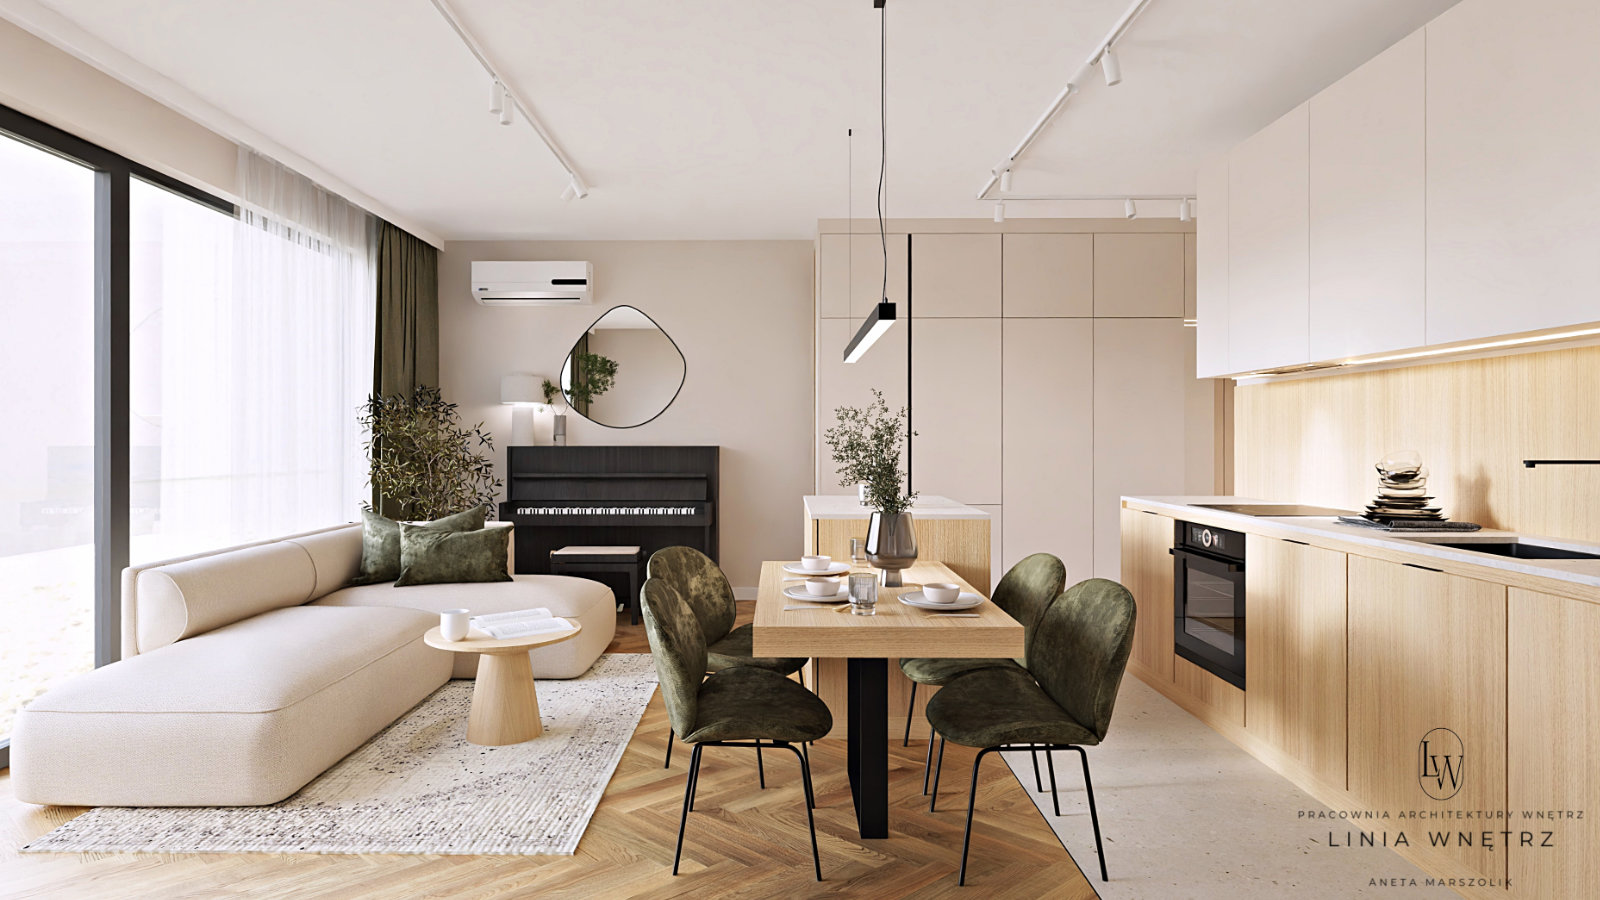 salon-otwarta-kuchnia-pokoj-dzienny-nowoczesn-przytulny-jasna-sofa-narozna-wyspa-kuchenna-stol-drewniany-krzesla-tapiceroane-zielone-szafa-na-wymiar-linia-wnetrz